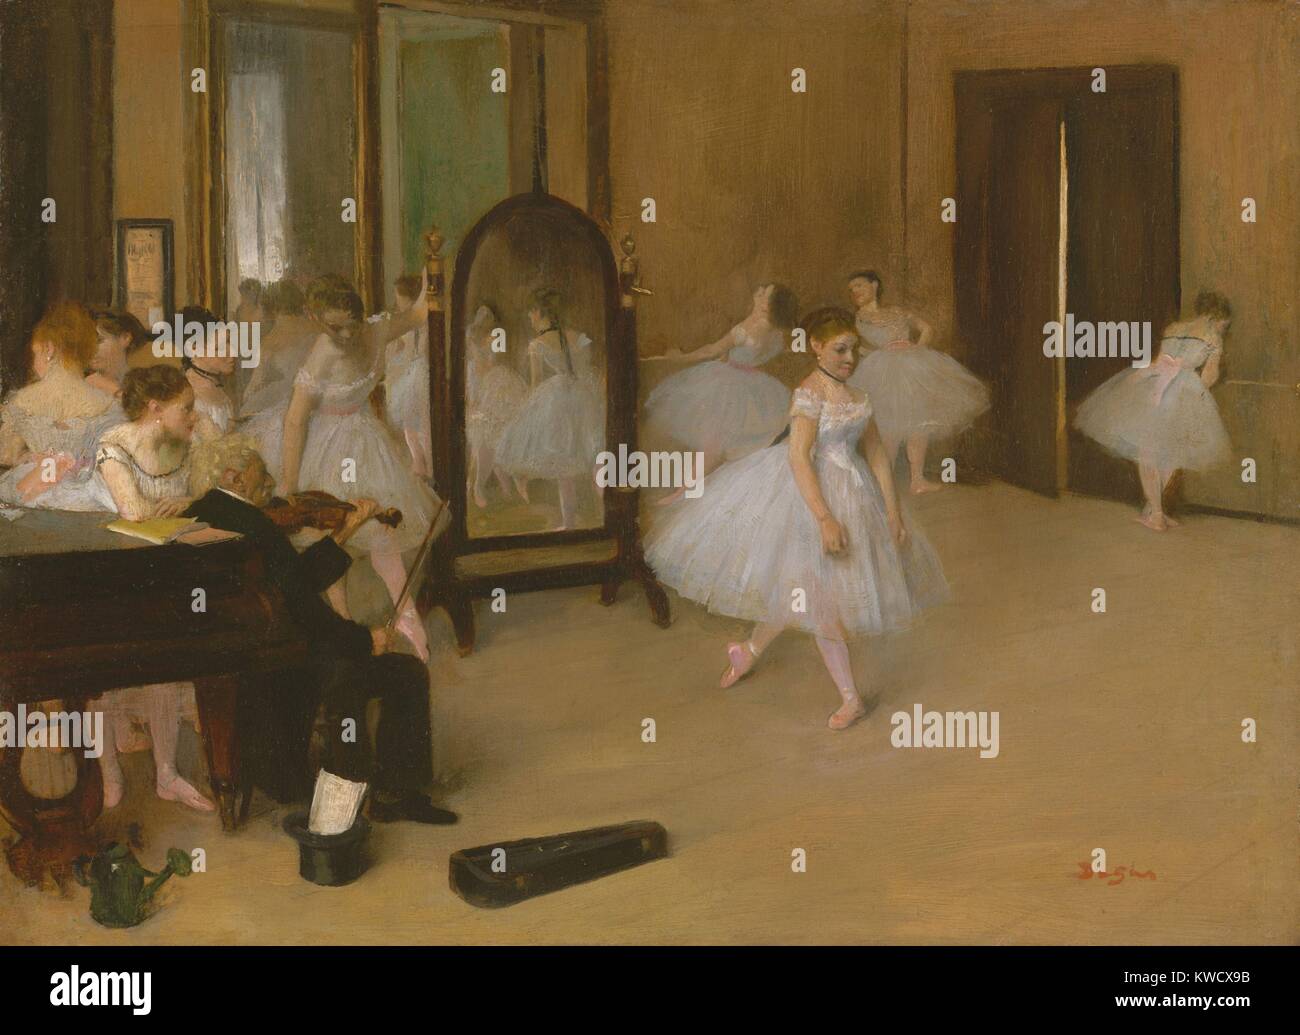 La classe de danse, par Edgar Degas, 1870, la peinture impressionniste français, huile sur bois. C'est la première fois Degass description d'une classe de danse, peint à partir de dessins d'étude (BSLOC 2017 3 101) Banque D'Images